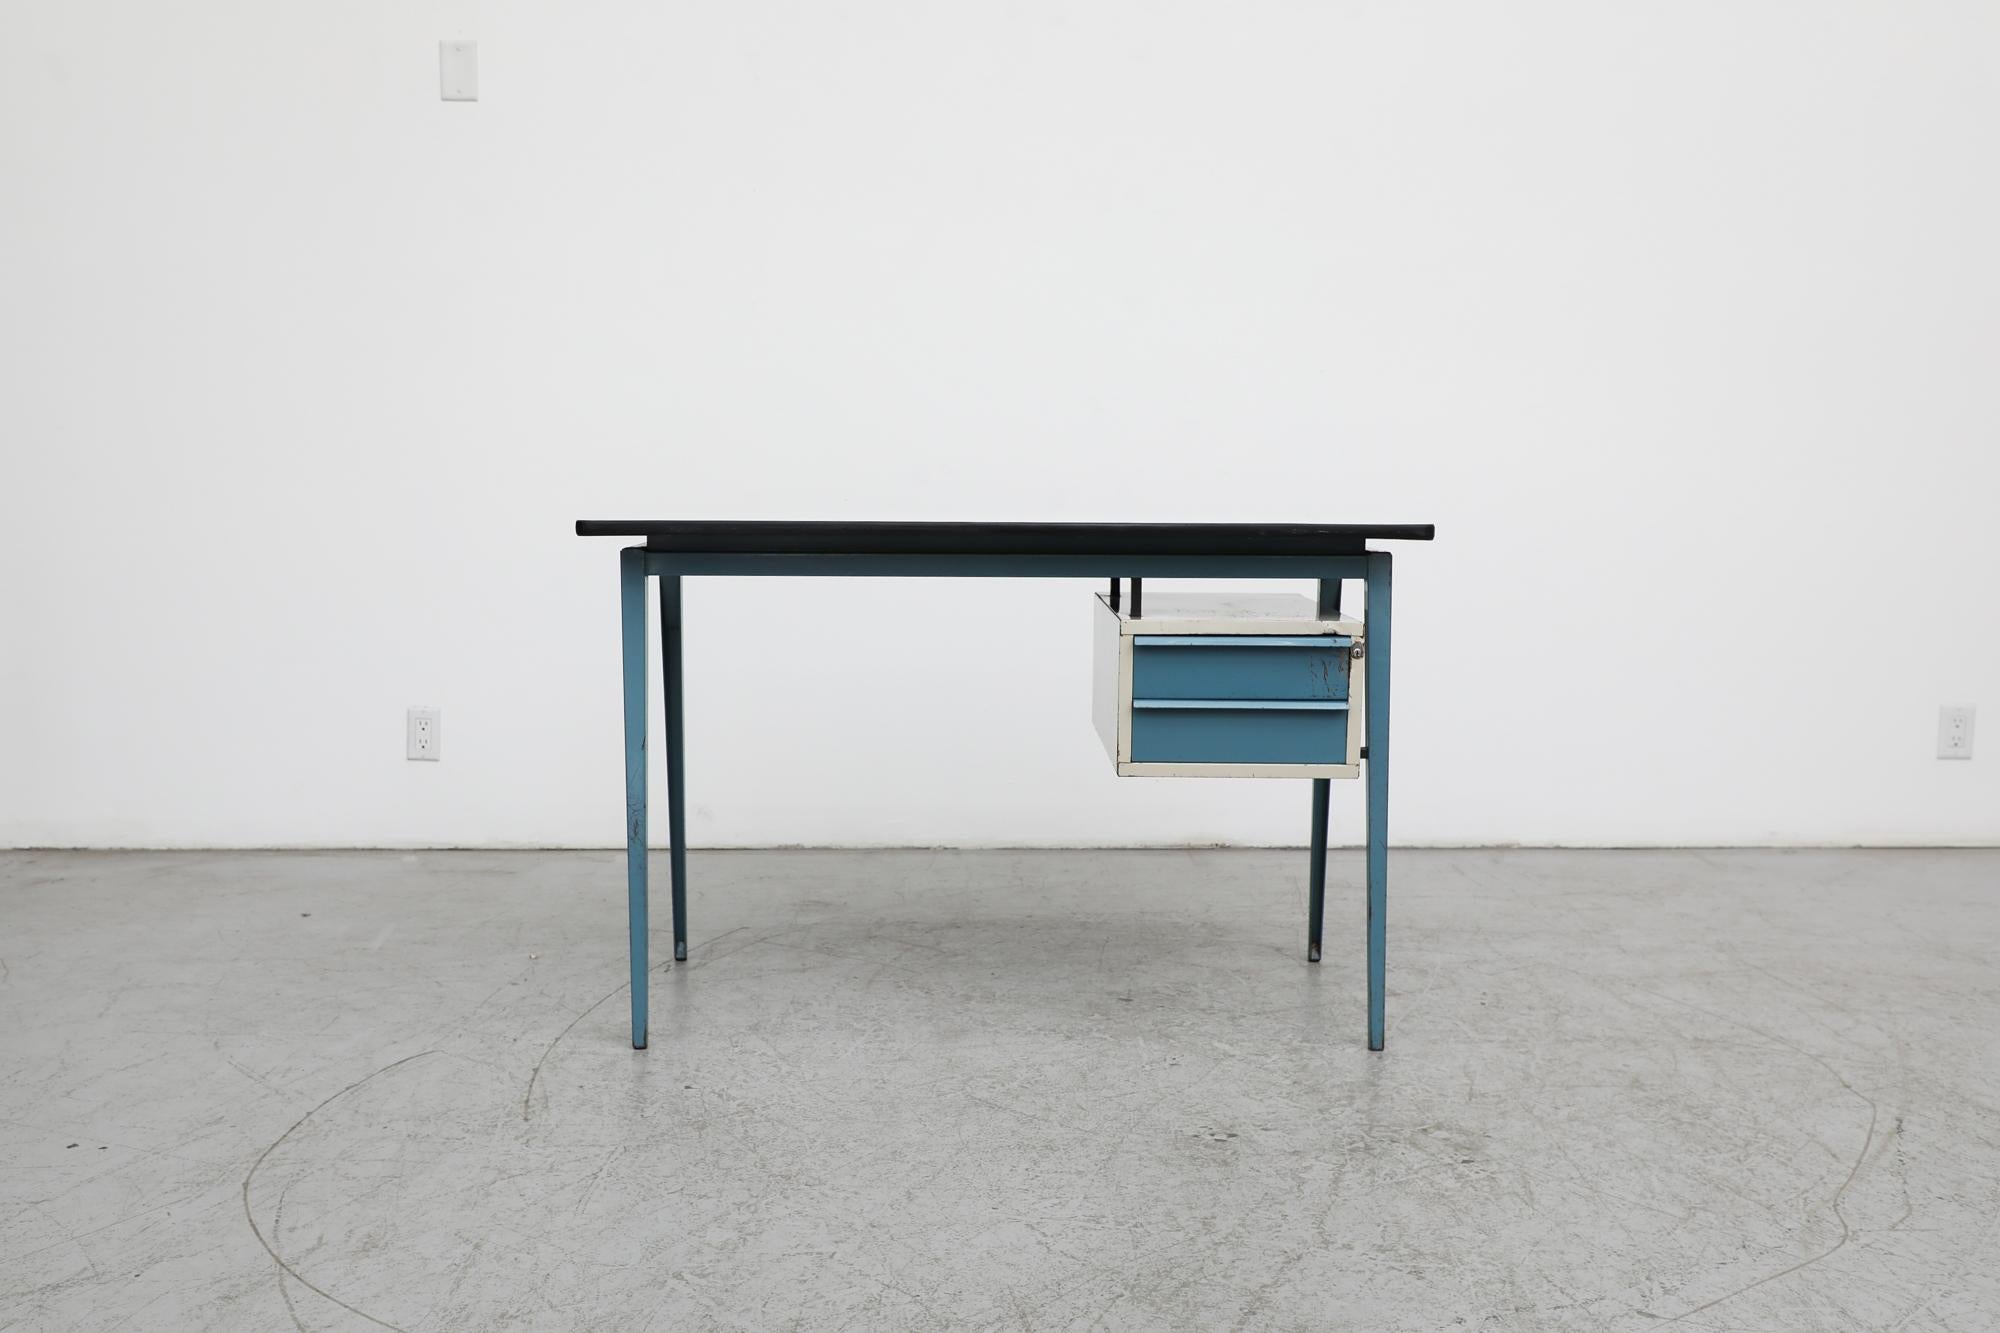 Prouve-inspirierter Industrie-Schreibtisch von Marko. Platte aus Formica mit blau emaillierten Metallfüßen und einem Seitenschrank mit zwei blauen Schubladen. Ideal für ein Loft oder ein Arbeitsstudio. Das Schloss funktioniert nicht mehr. In sehr